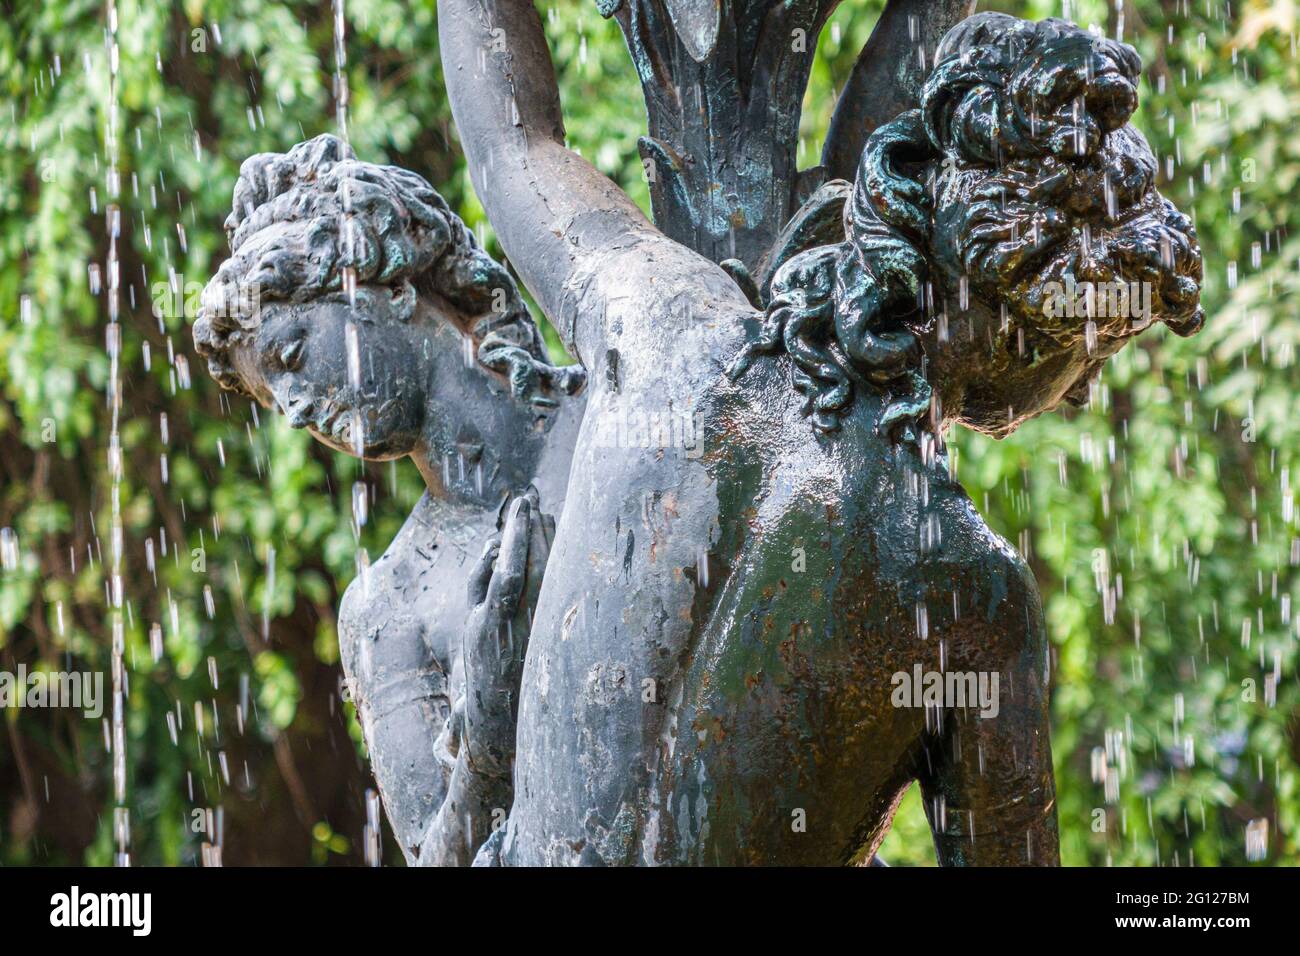 Argentine Buenos Aires Palermo Park jardin Botanico Carlos Thays jardin botanique sculpture de fontaine décorative Banque D'Images